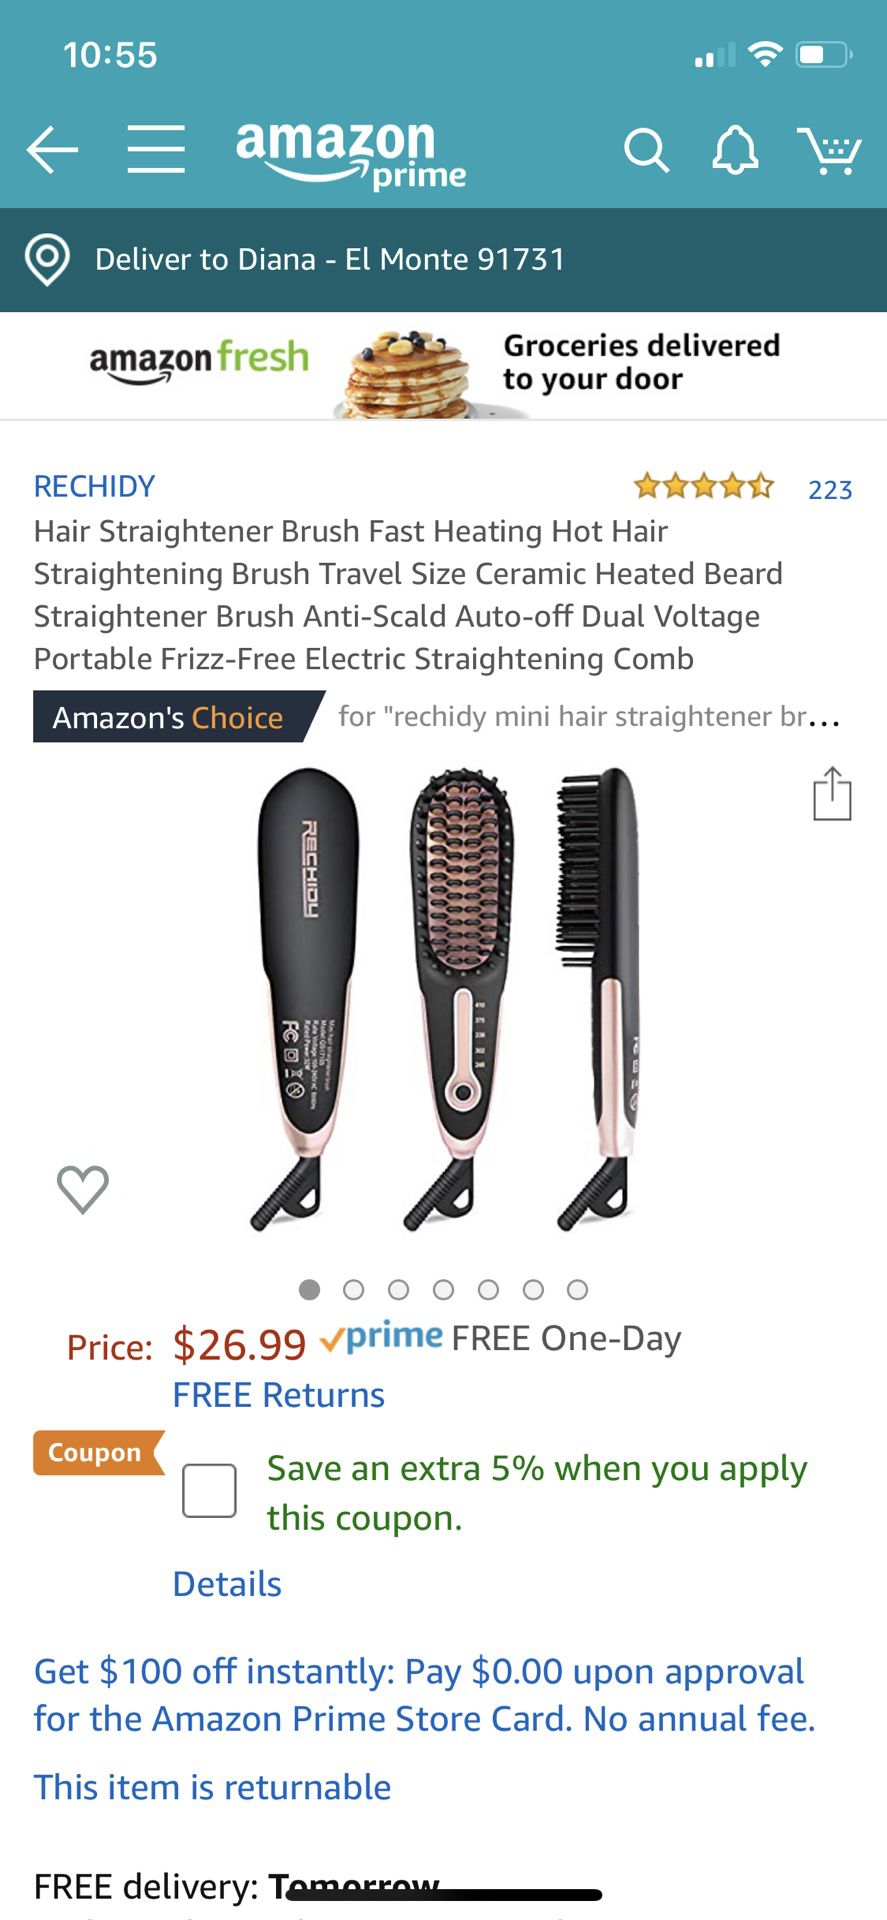 Hair Straightener Brush Fast Heating Hot Hair Straightening Brush Travel Size Ceramic Heated Beard Straightener Brush Anti-Scald Auto-off Dual Voltag